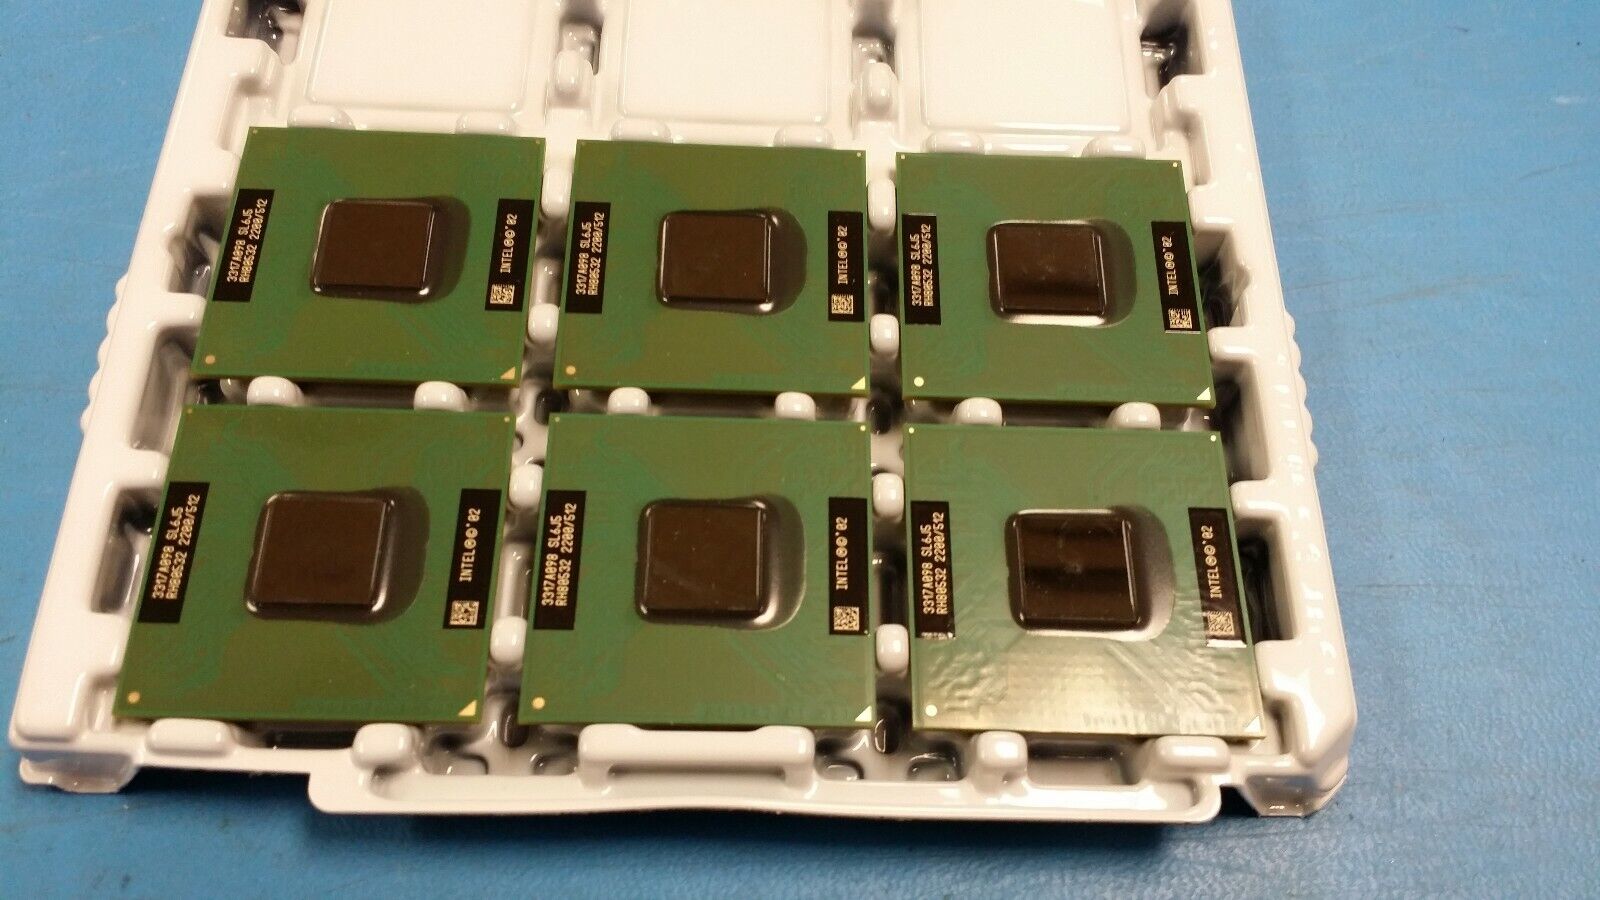 Intel Pentium 4-M 2.2GHz (RH80532GC049512) Processor